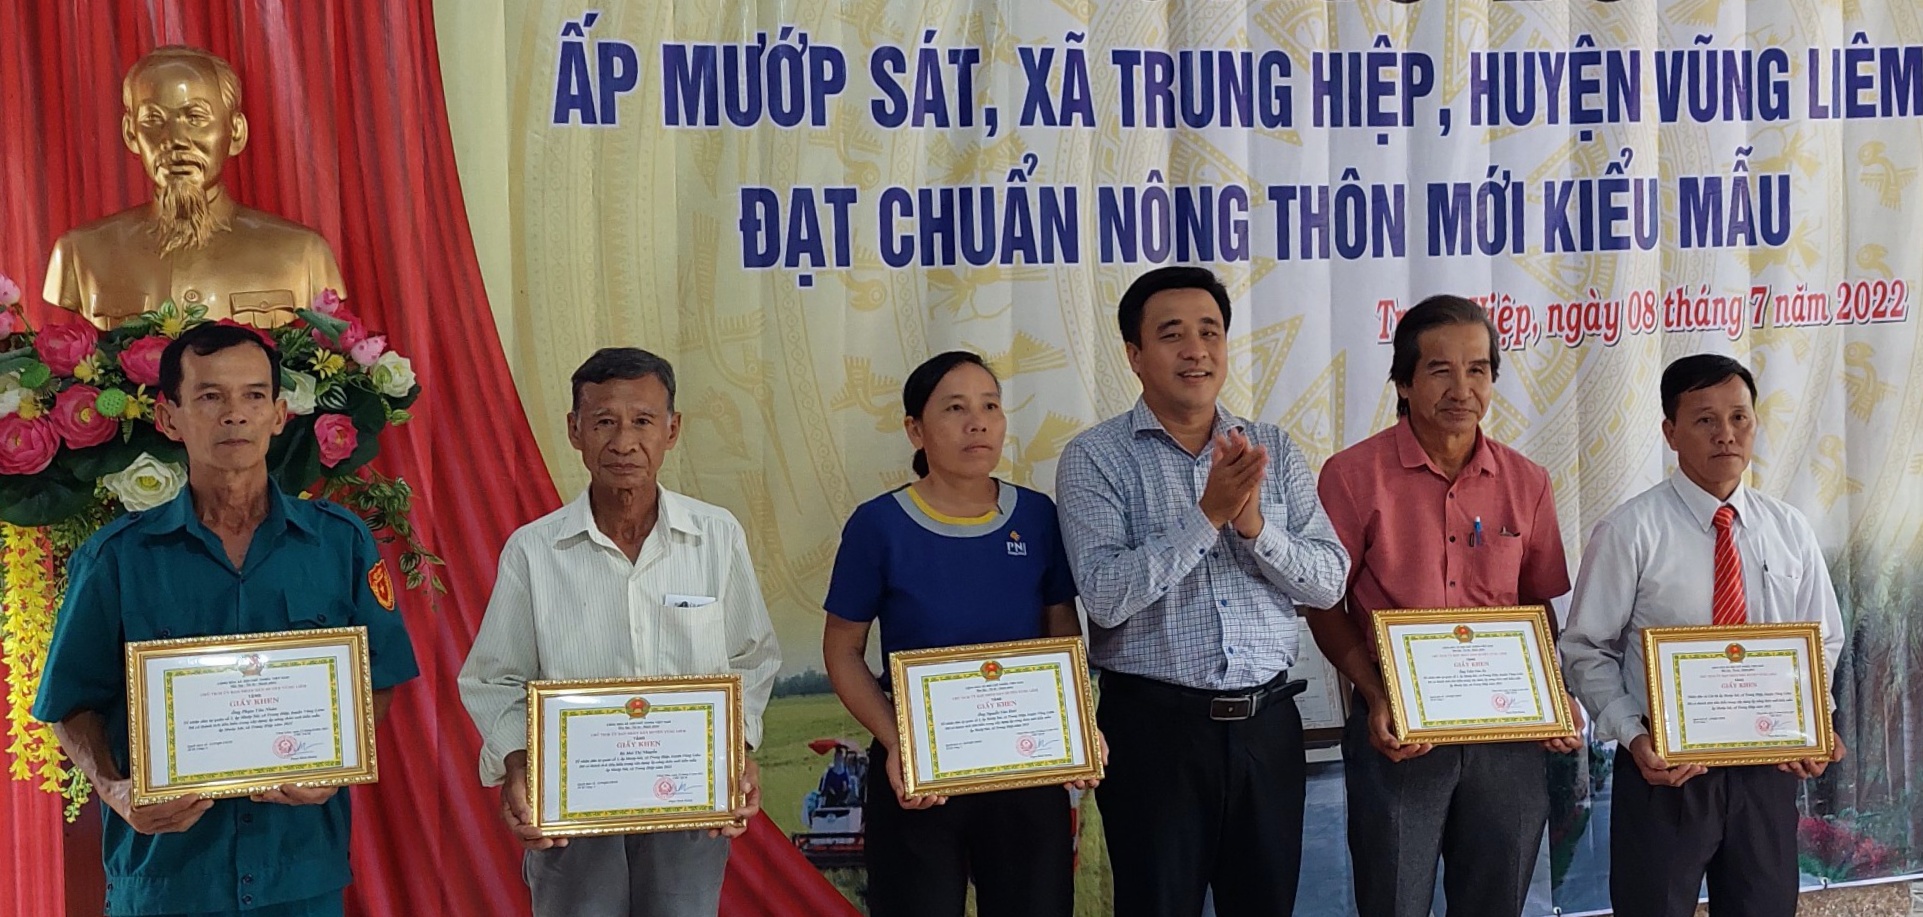 Ông Bùi Tấn Đảm- Phó Chủ tịch UBND huyện Vũng Liêm trao giấy khen cho các tập thể, cá nhân tiêu biểu trong xây dựng ấp NTM kiểu mẫu.